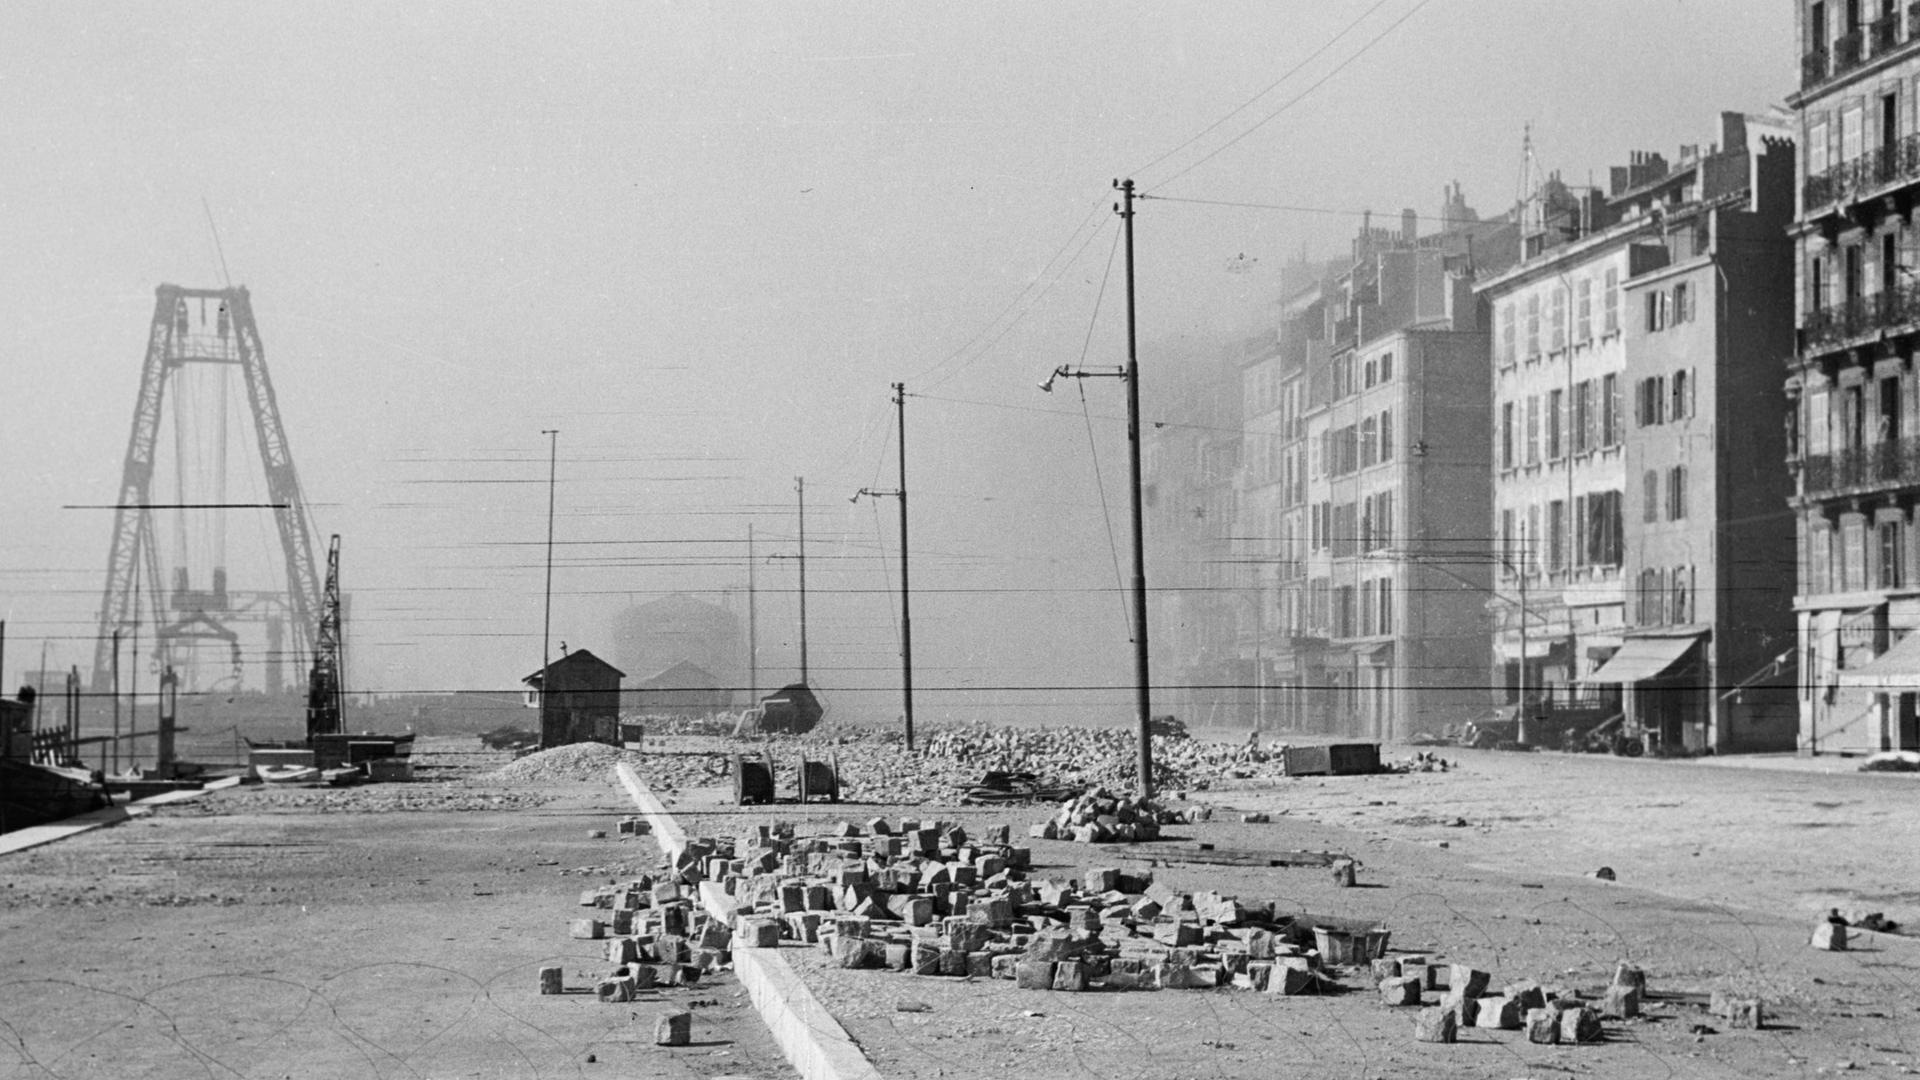 Blick auf eine zerstörte Straße nach dem Abriss bzw. Sprengung des alten Hafen-viertels von Marseille durch Einheiten der deutschen Wehrmacht im Februar 1943, nach Großrazzien gegen Juden und Emigranten.